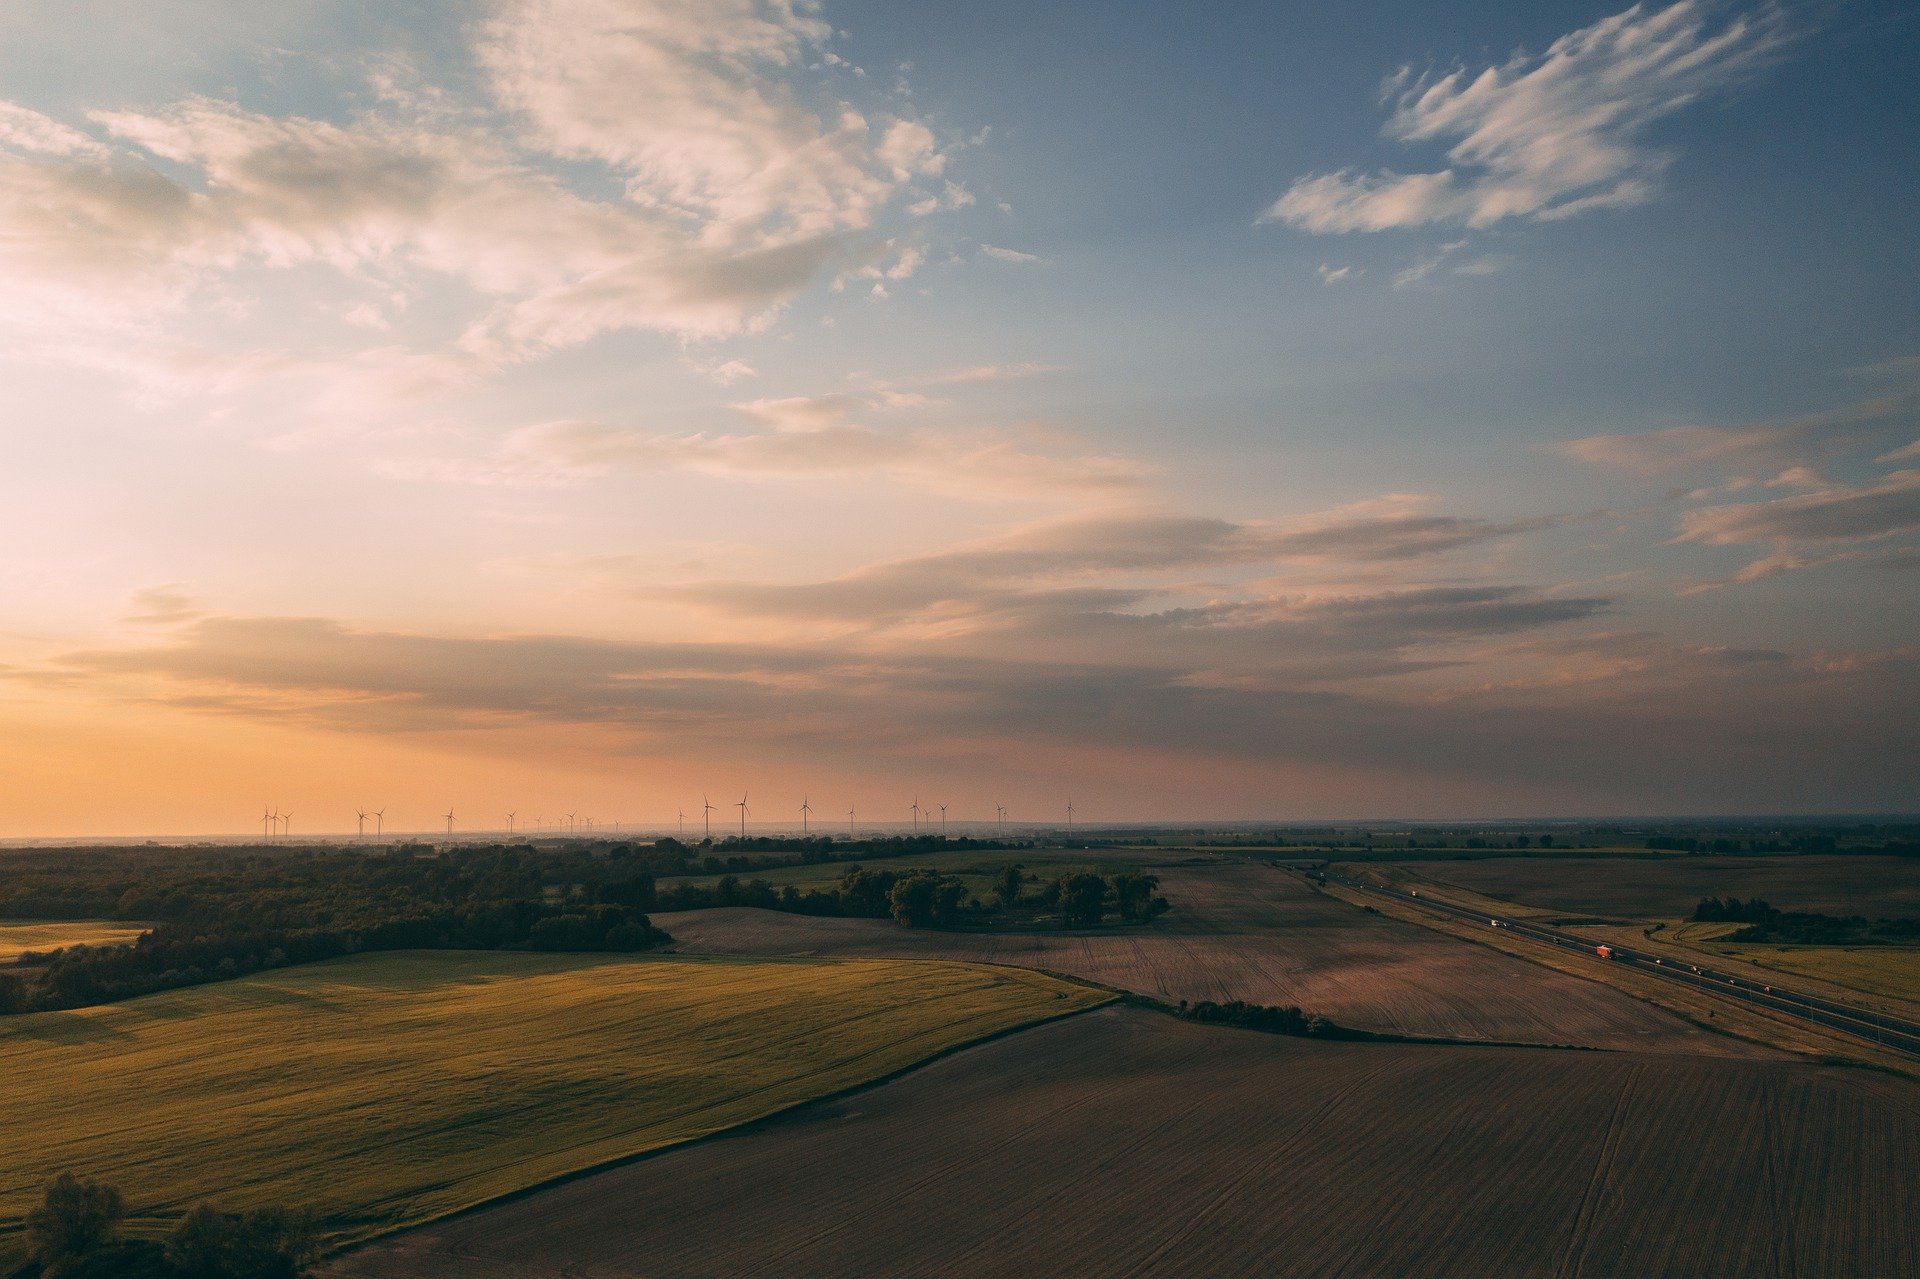 Sonnenuntergang auf einem Feld in Sachsen-Anhalt